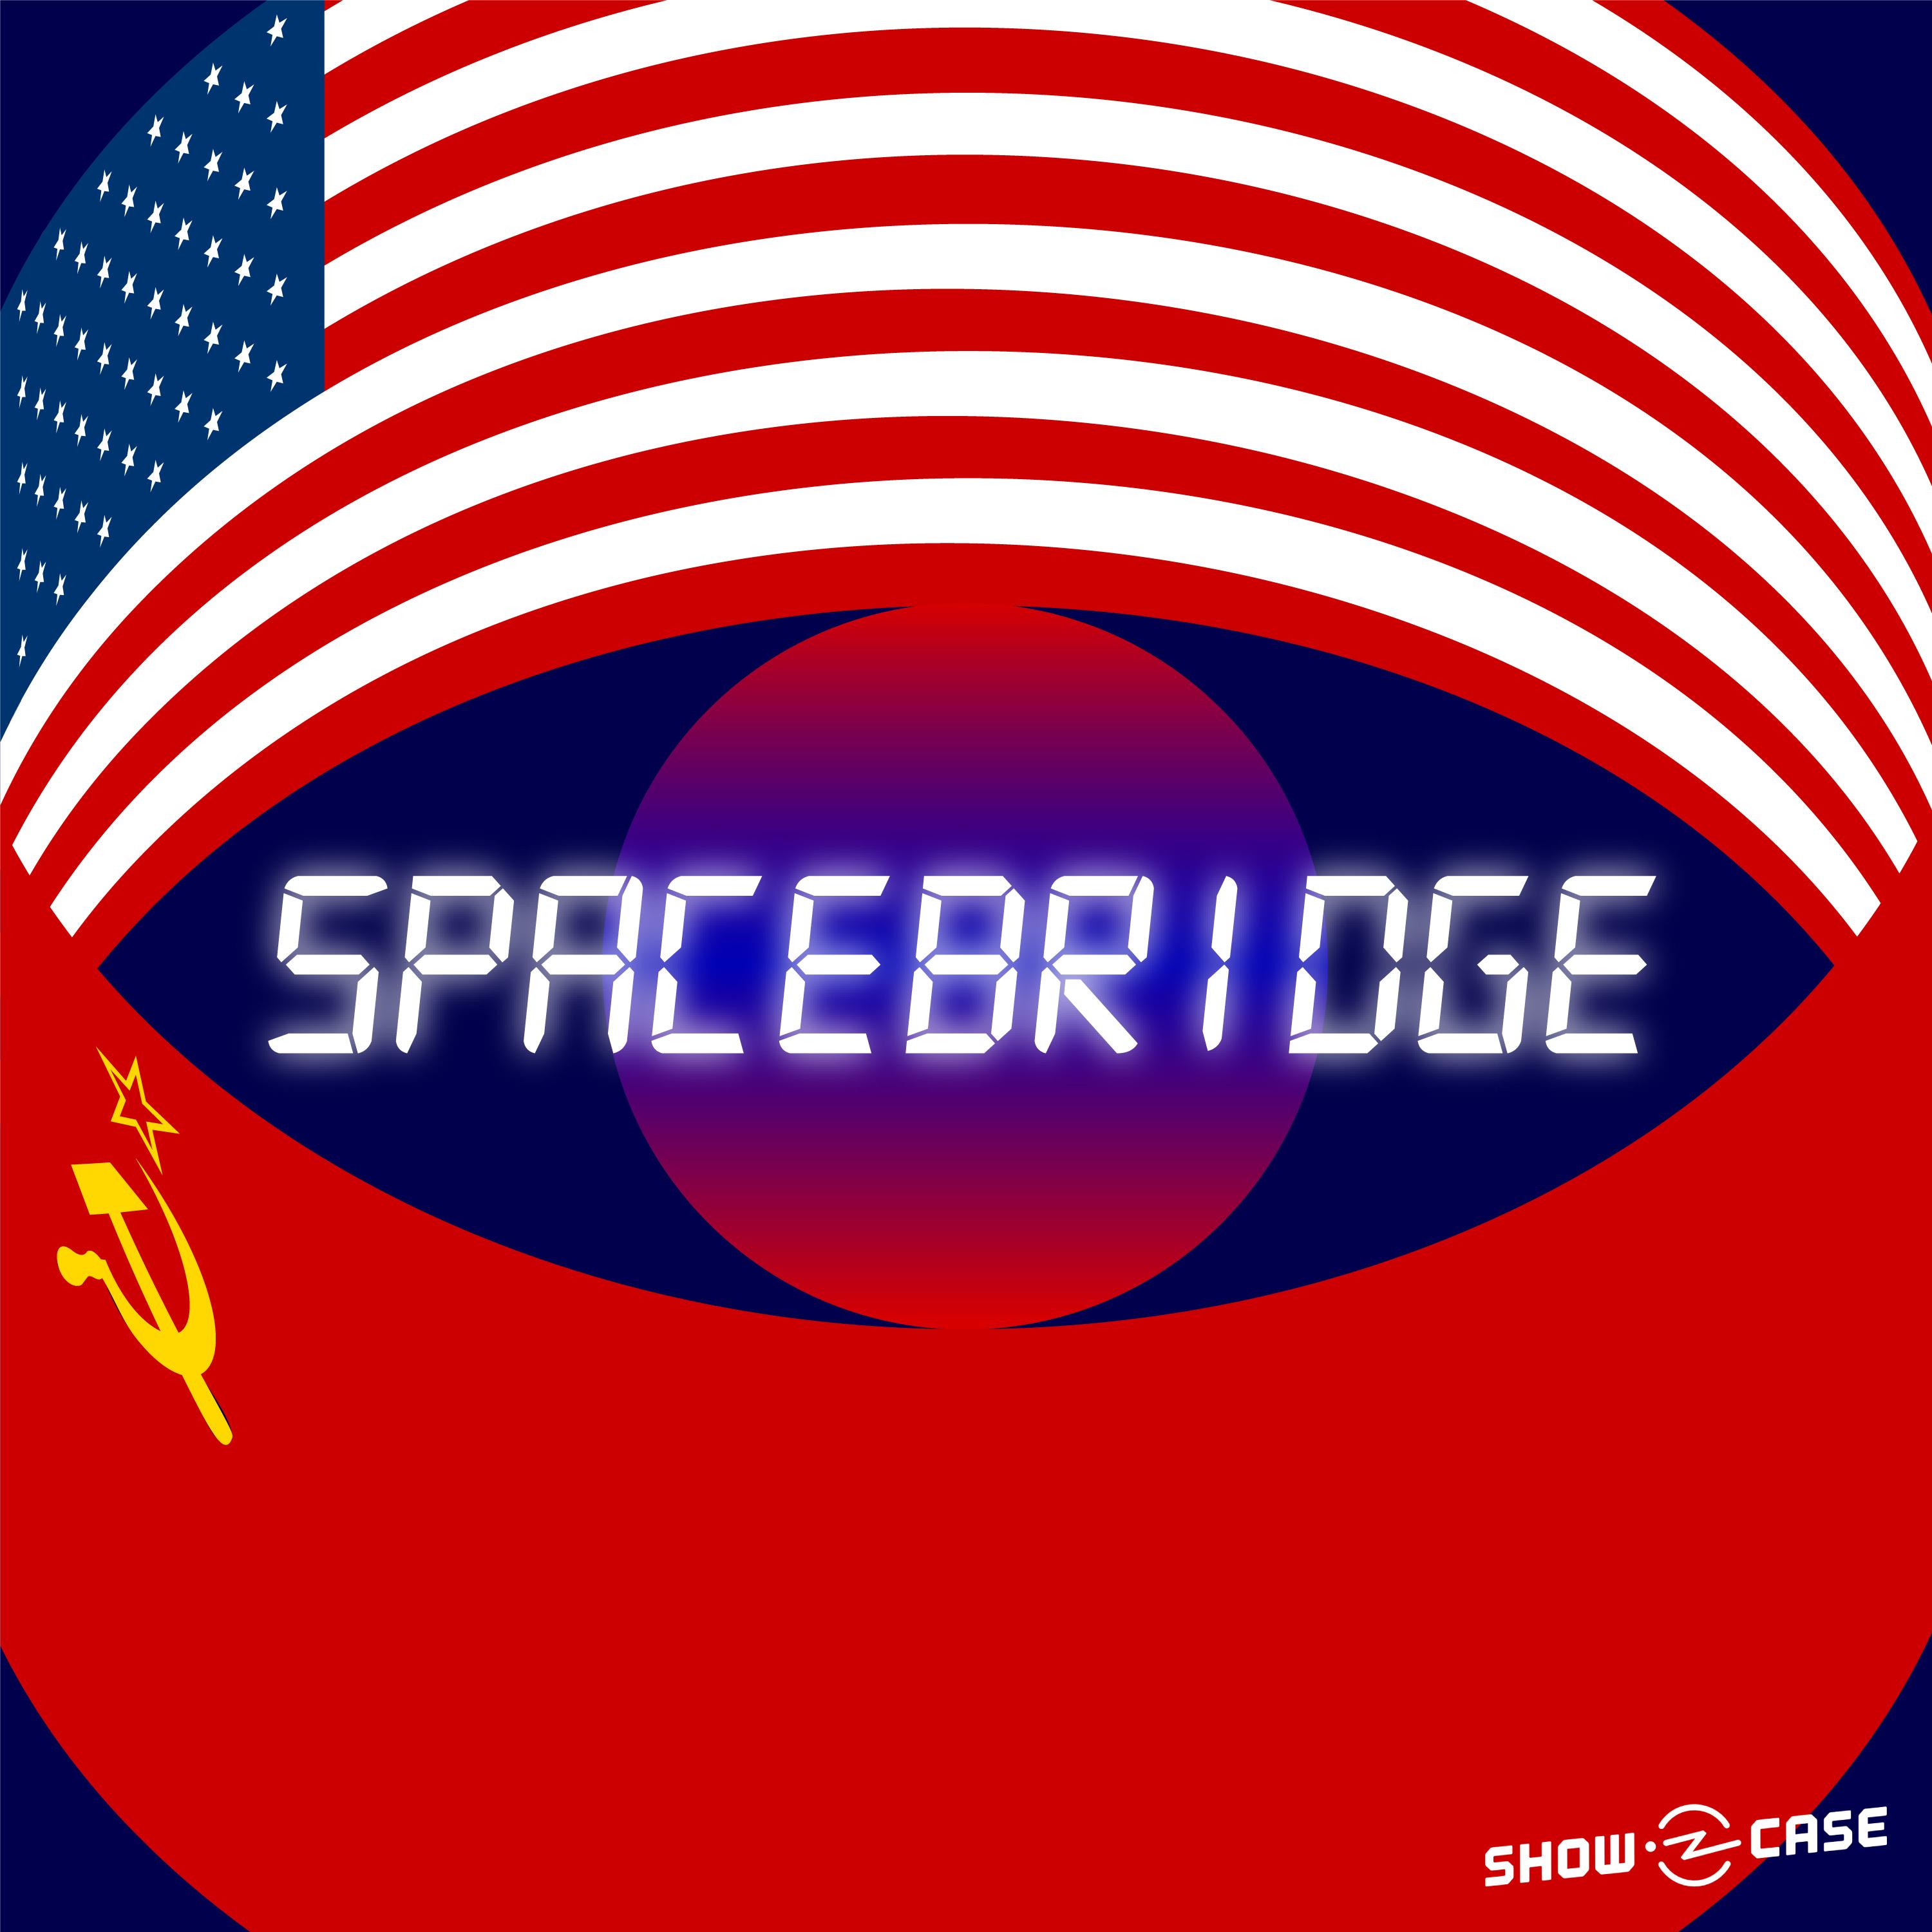 Thumbnail for "Spacebridge #3 – A Live Studio Audience".